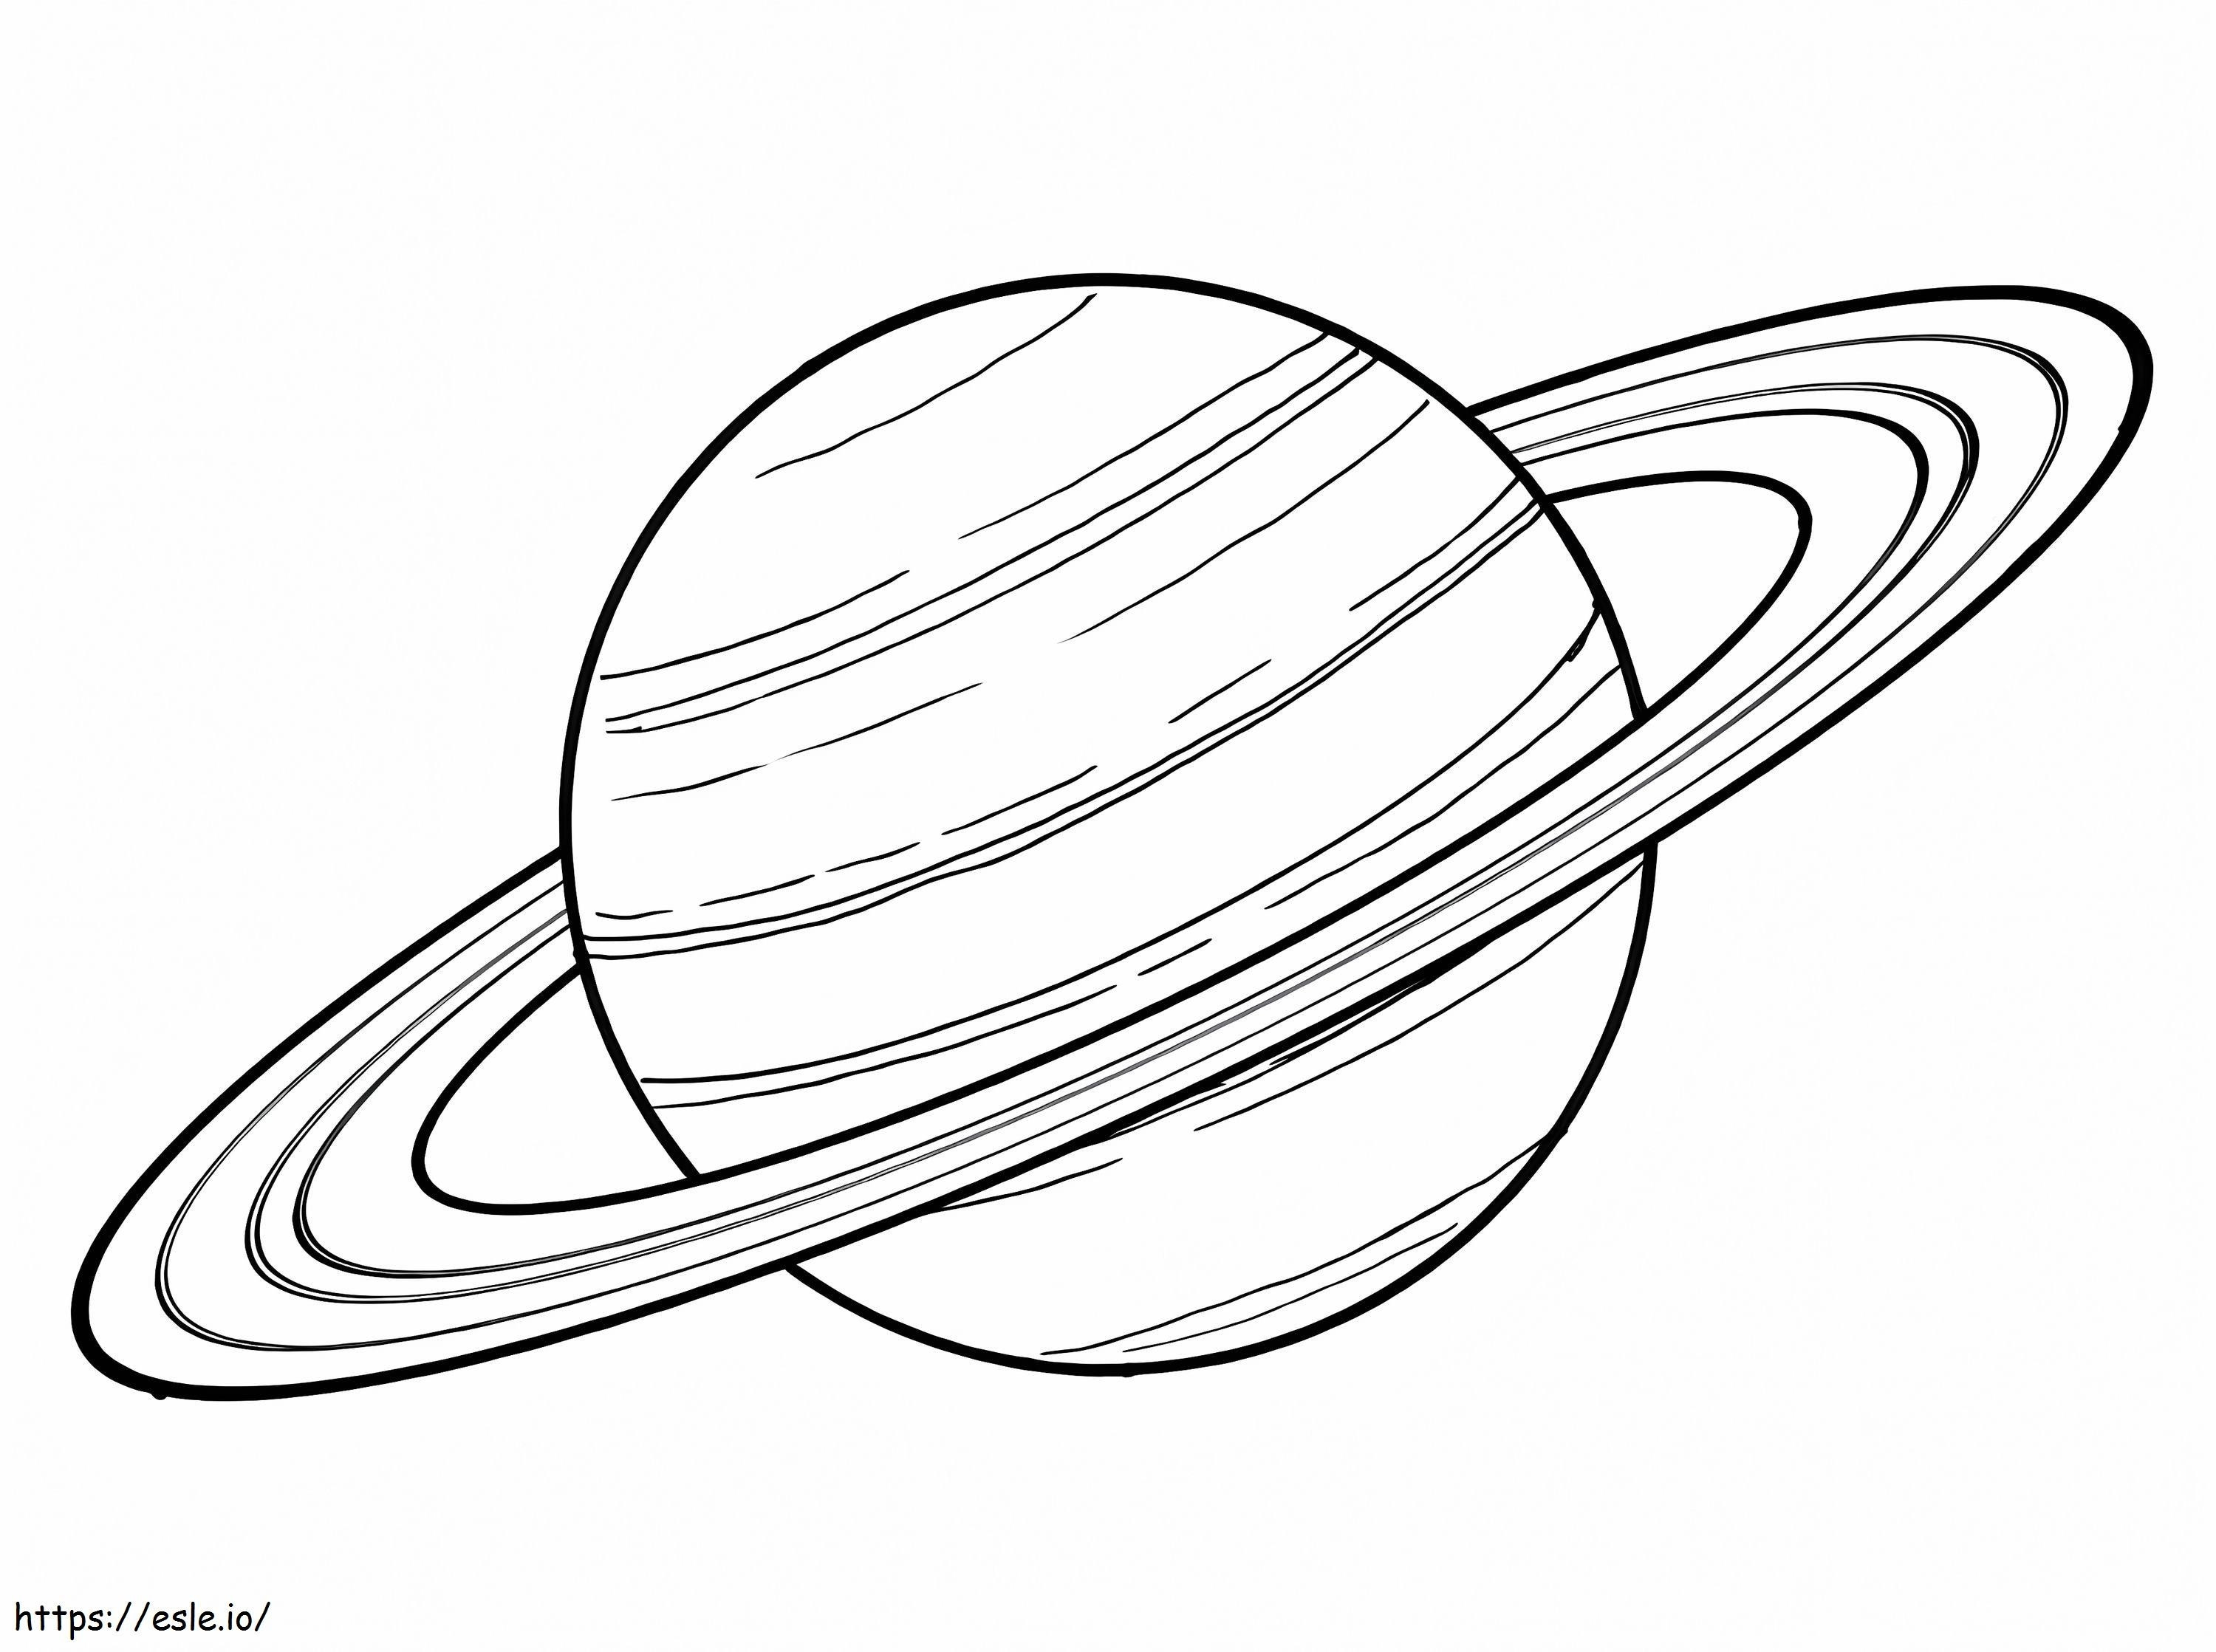 Saturno imprimible para colorear